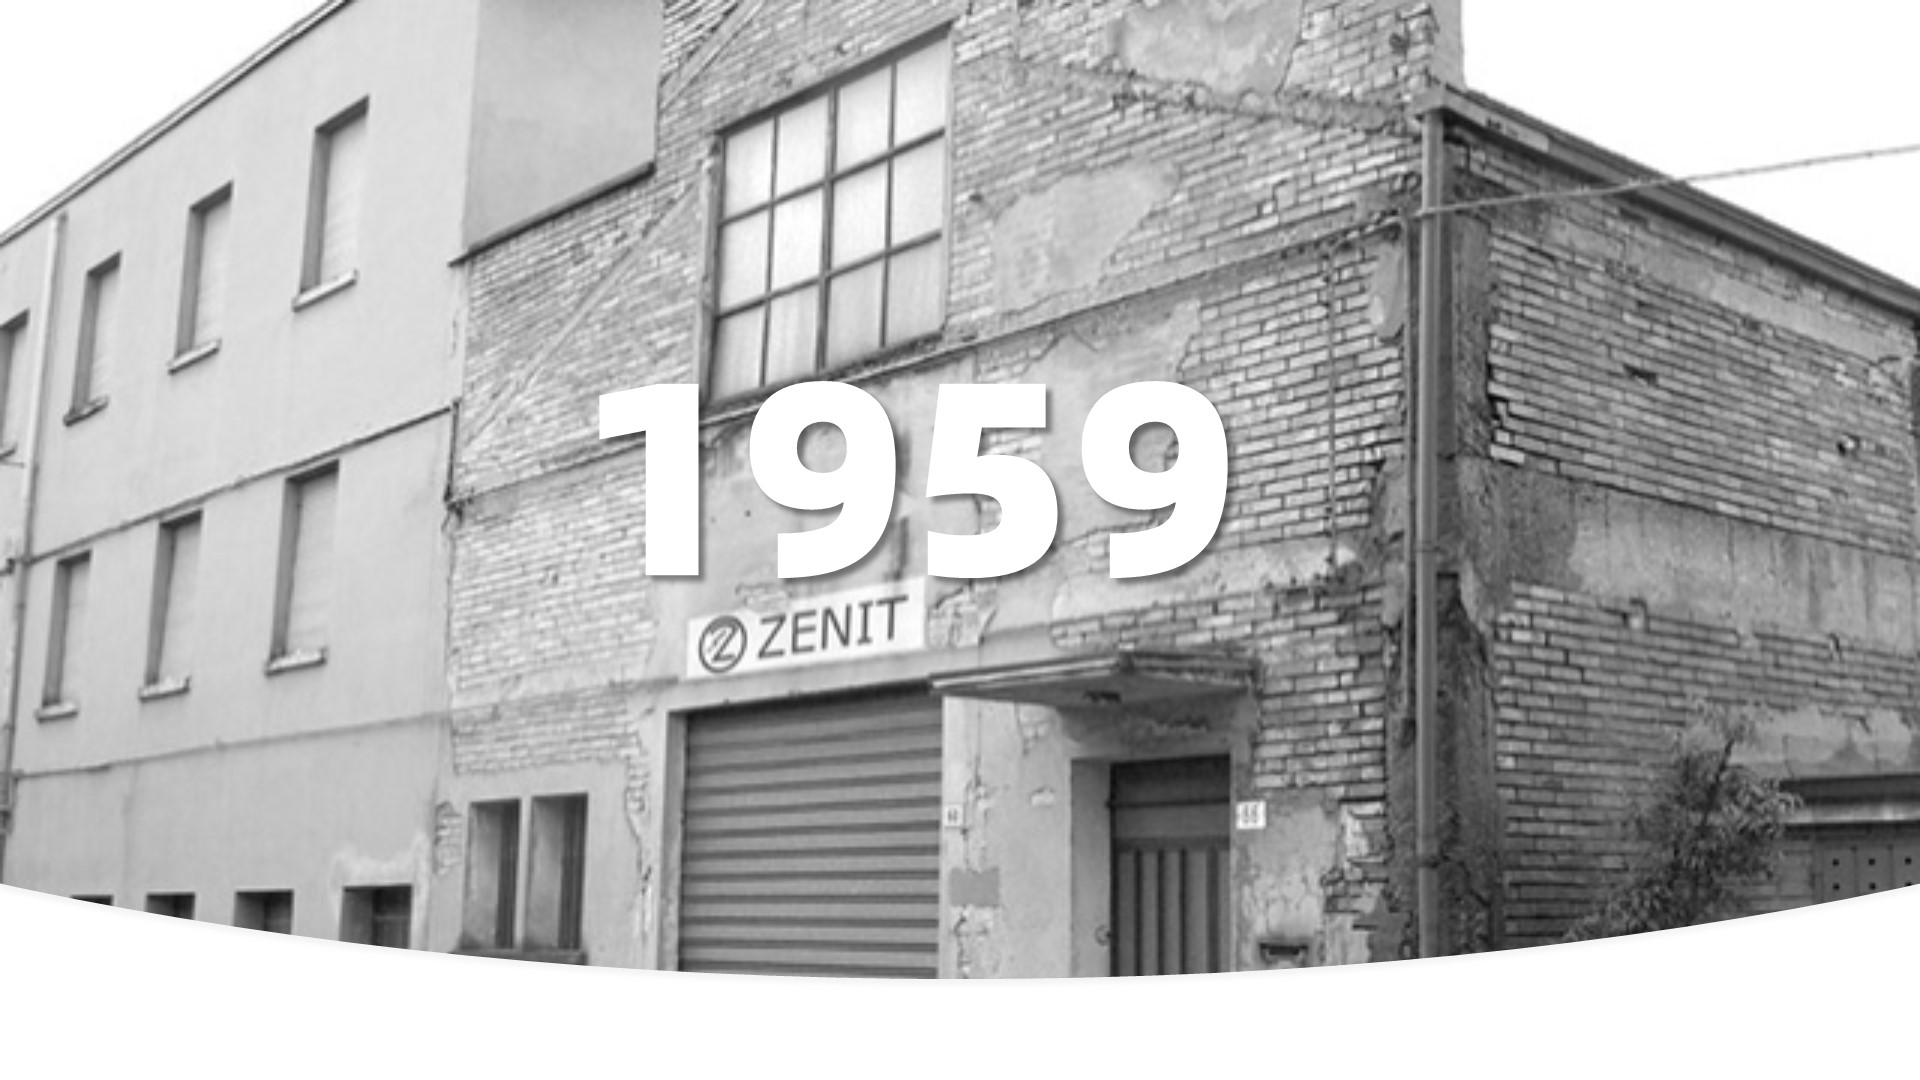 雨果·泽尼创立了泽尼特，当时主要生产和维修电机和液压泵。总部设在摩德纳，市场在意大利。